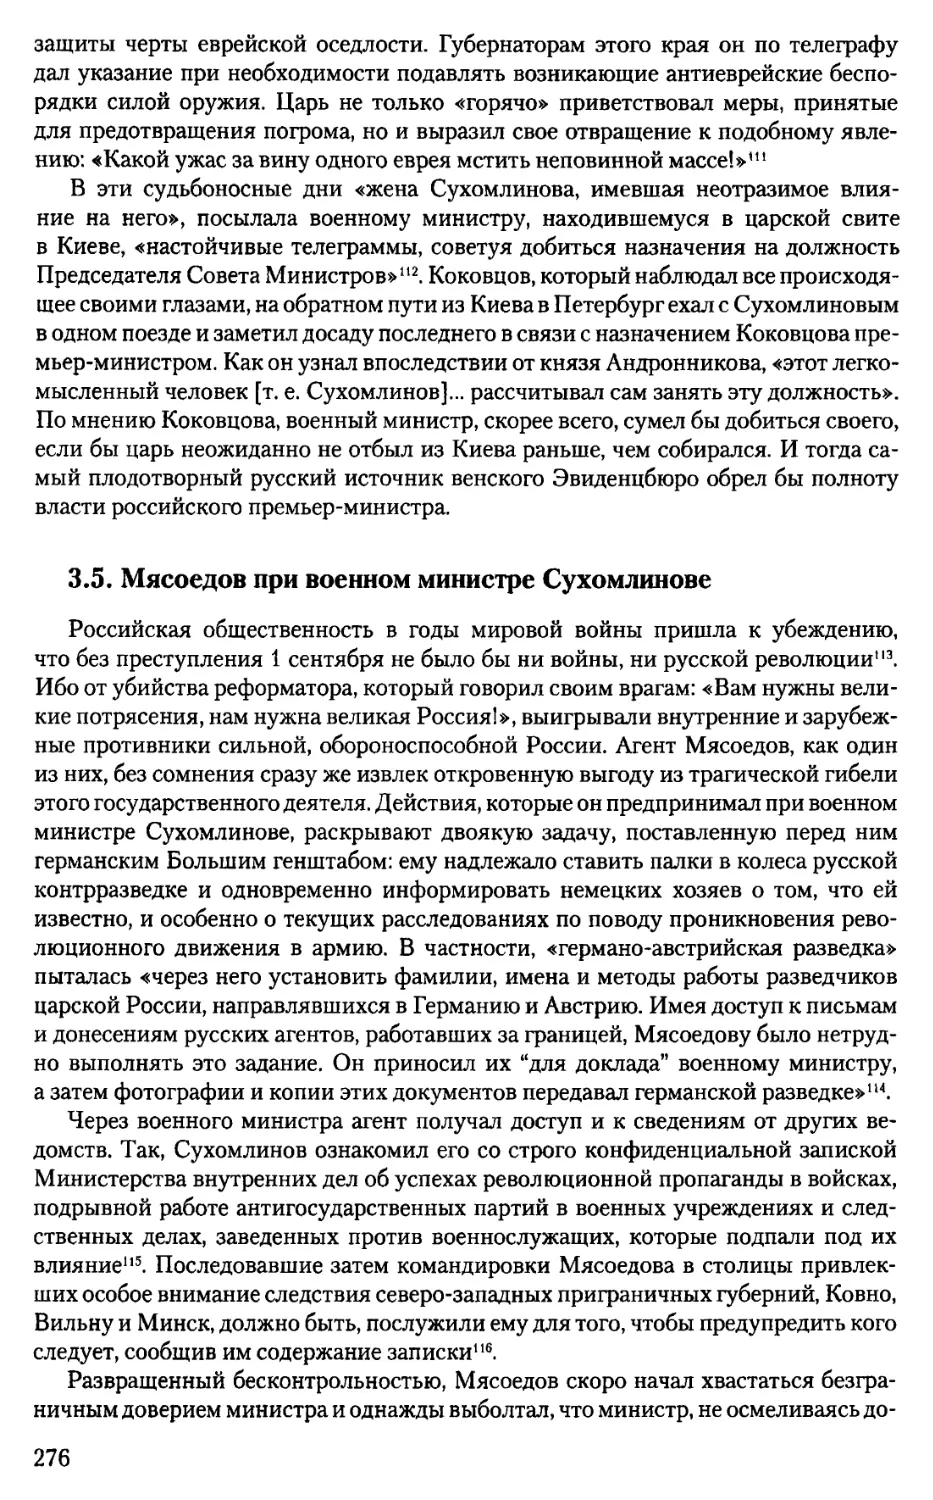 3.5. Мясоедов при военном министре Сухомлинове